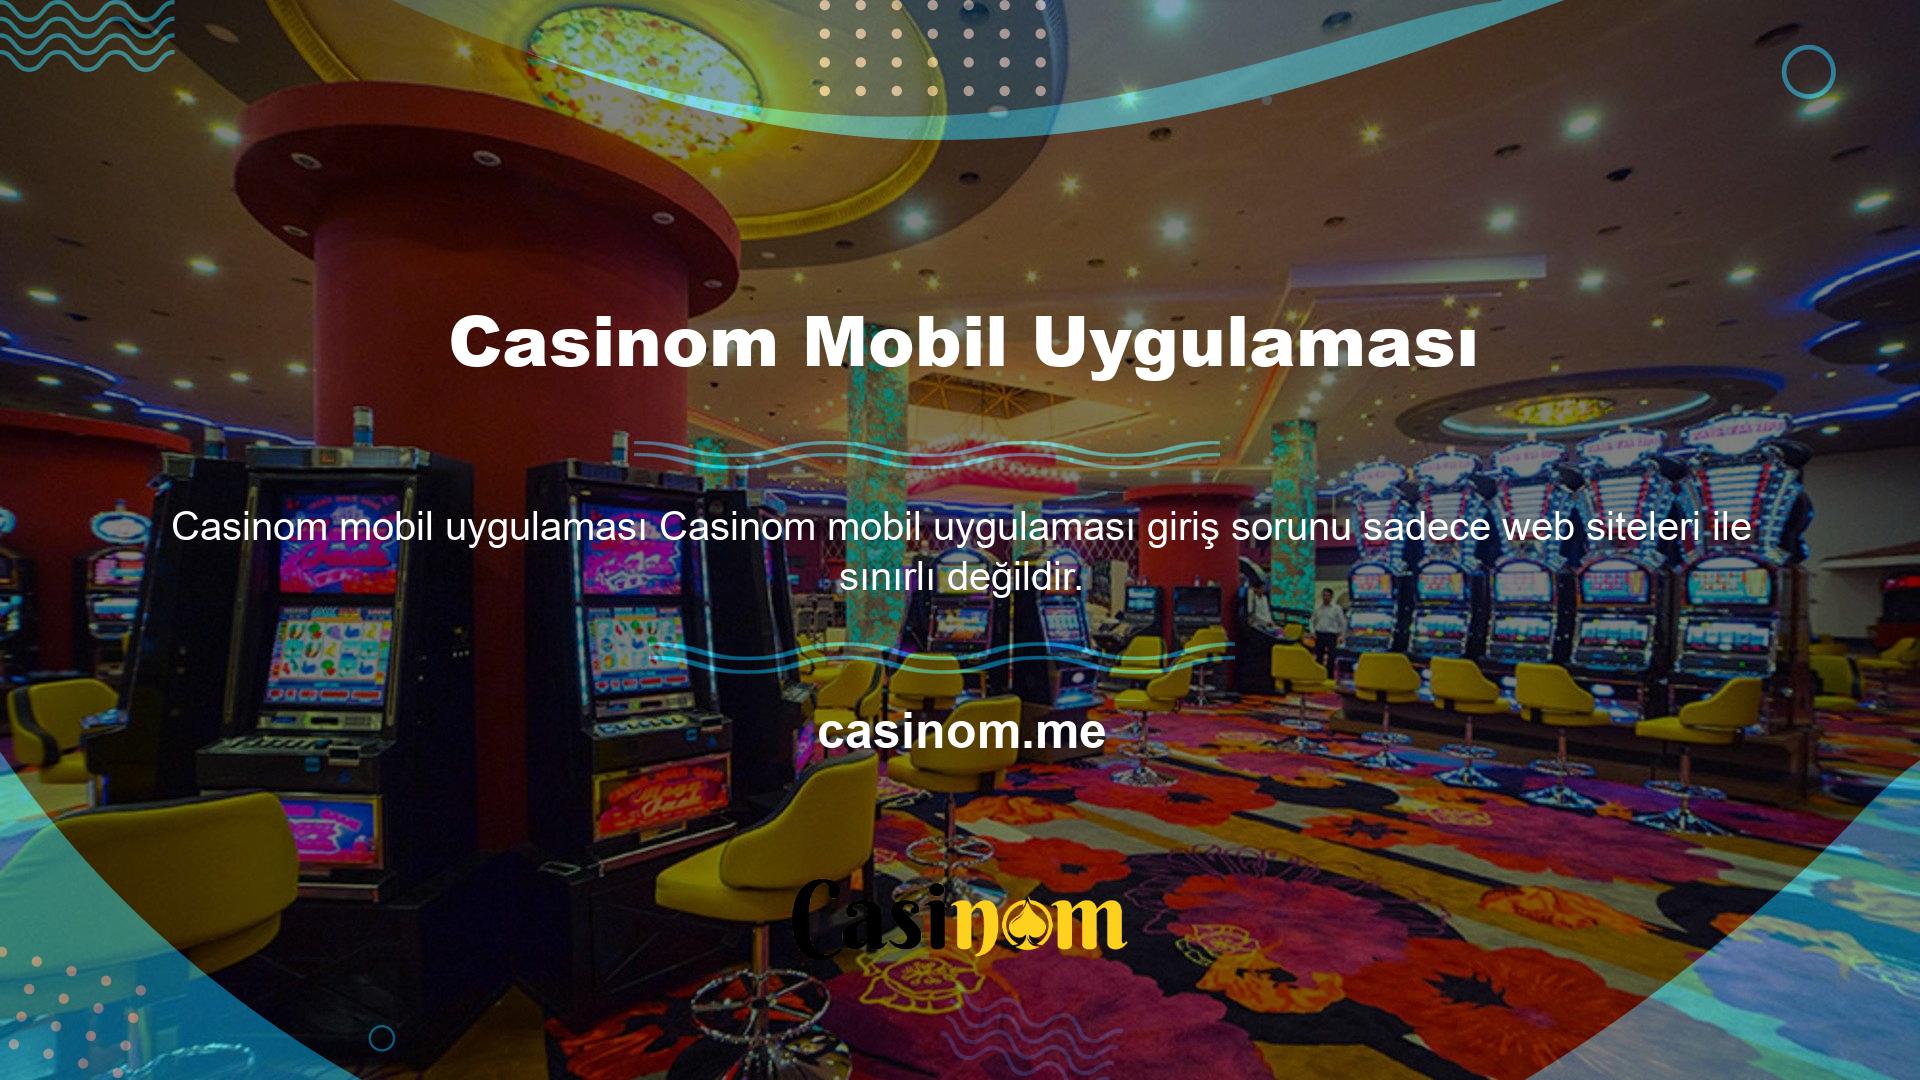 Casinom mobil uygulamaları da yasaklanmıştır